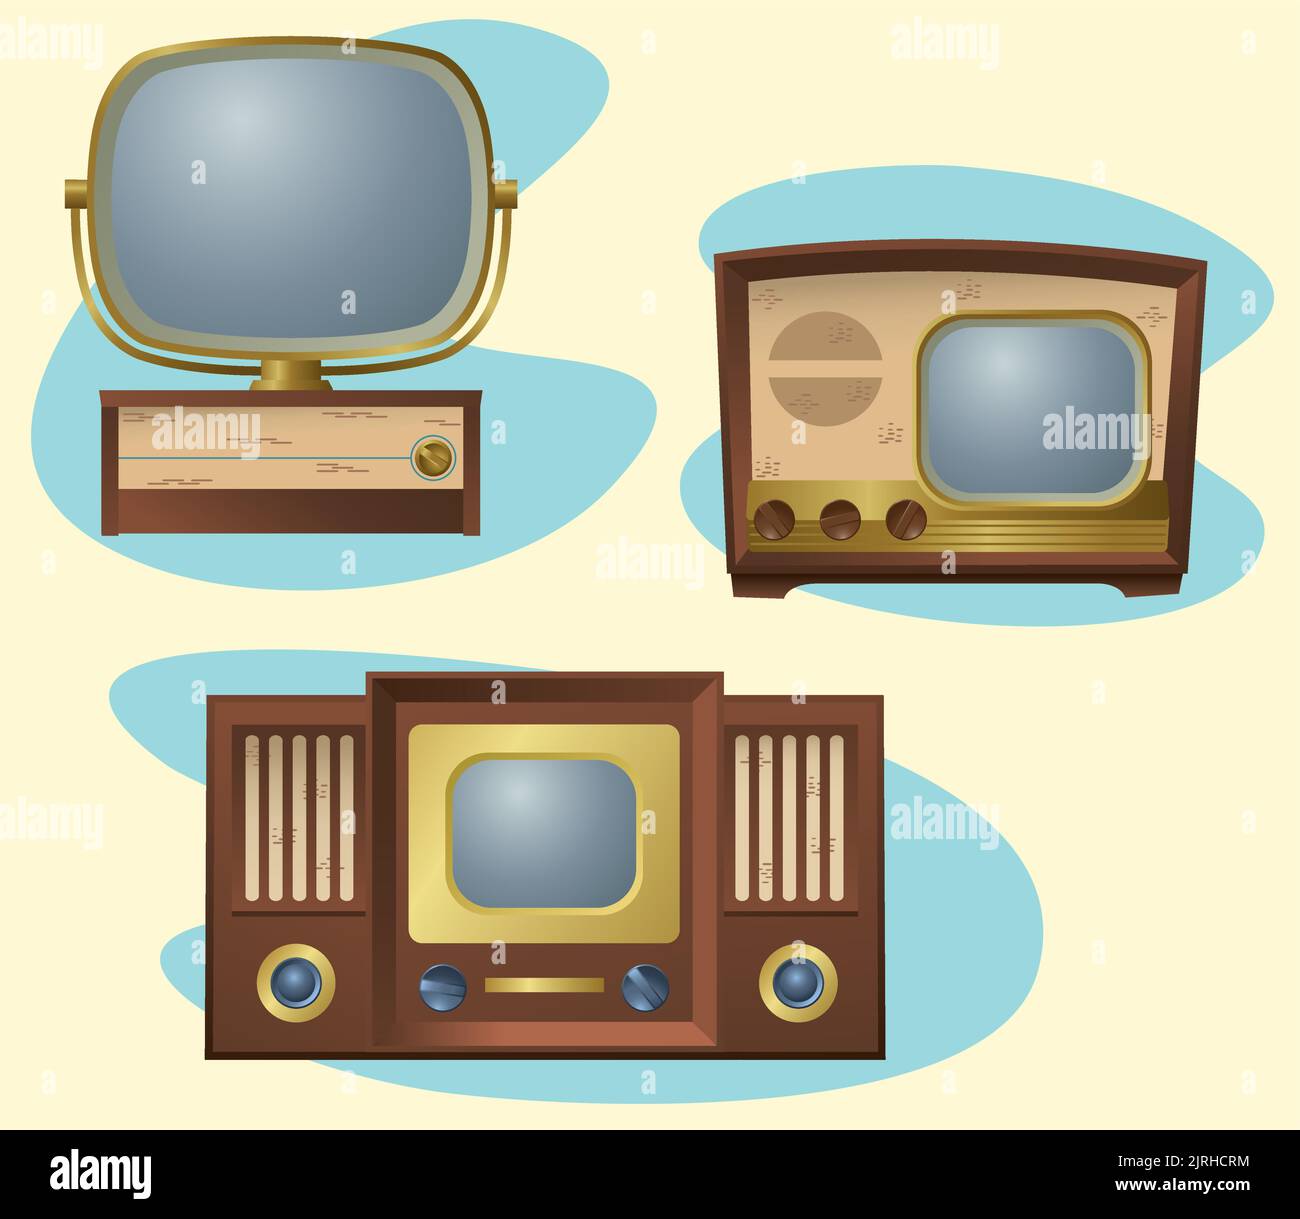 Un set di illustrazioni grafiche di televisori retrò vintage. Illustrazione Vettoriale